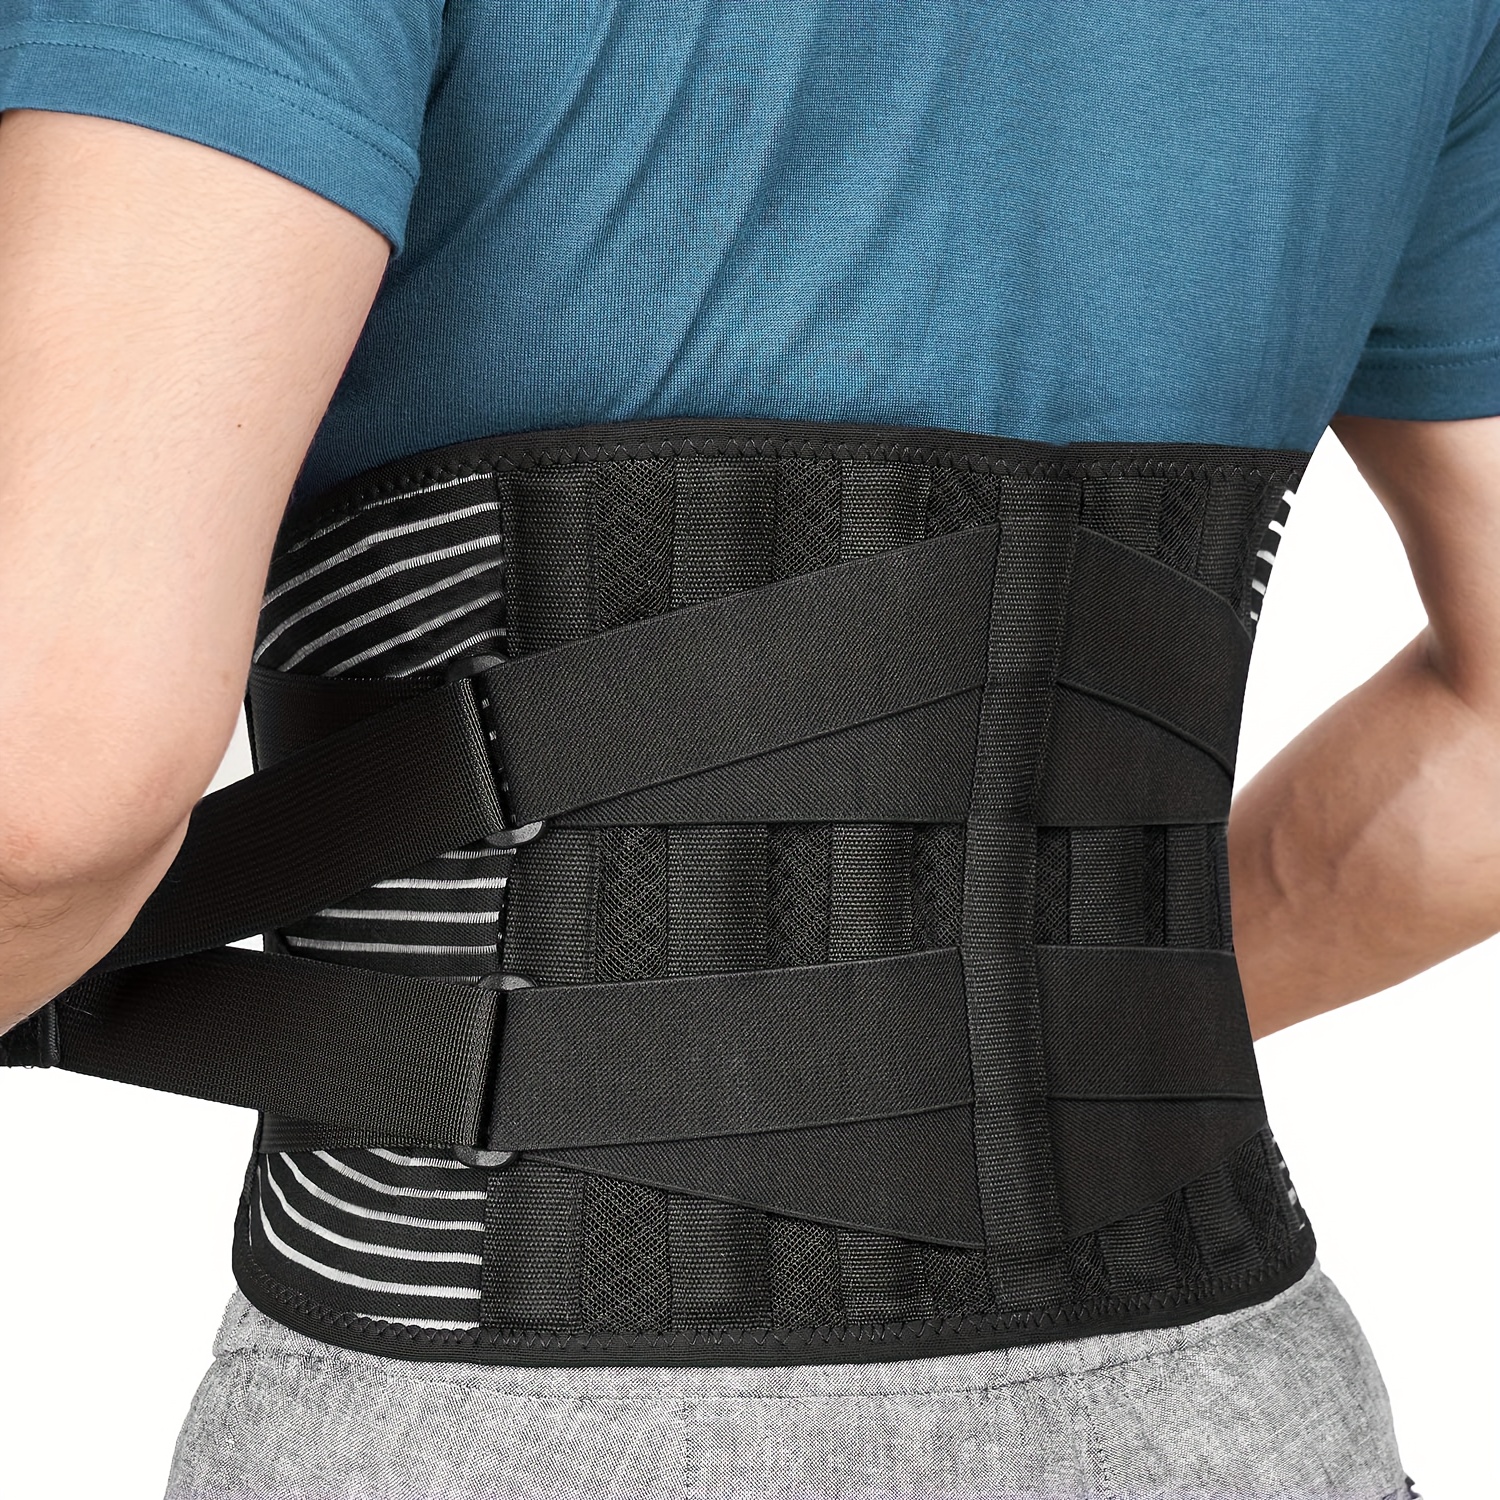 Lumbar Support Belt Lower Back Pain